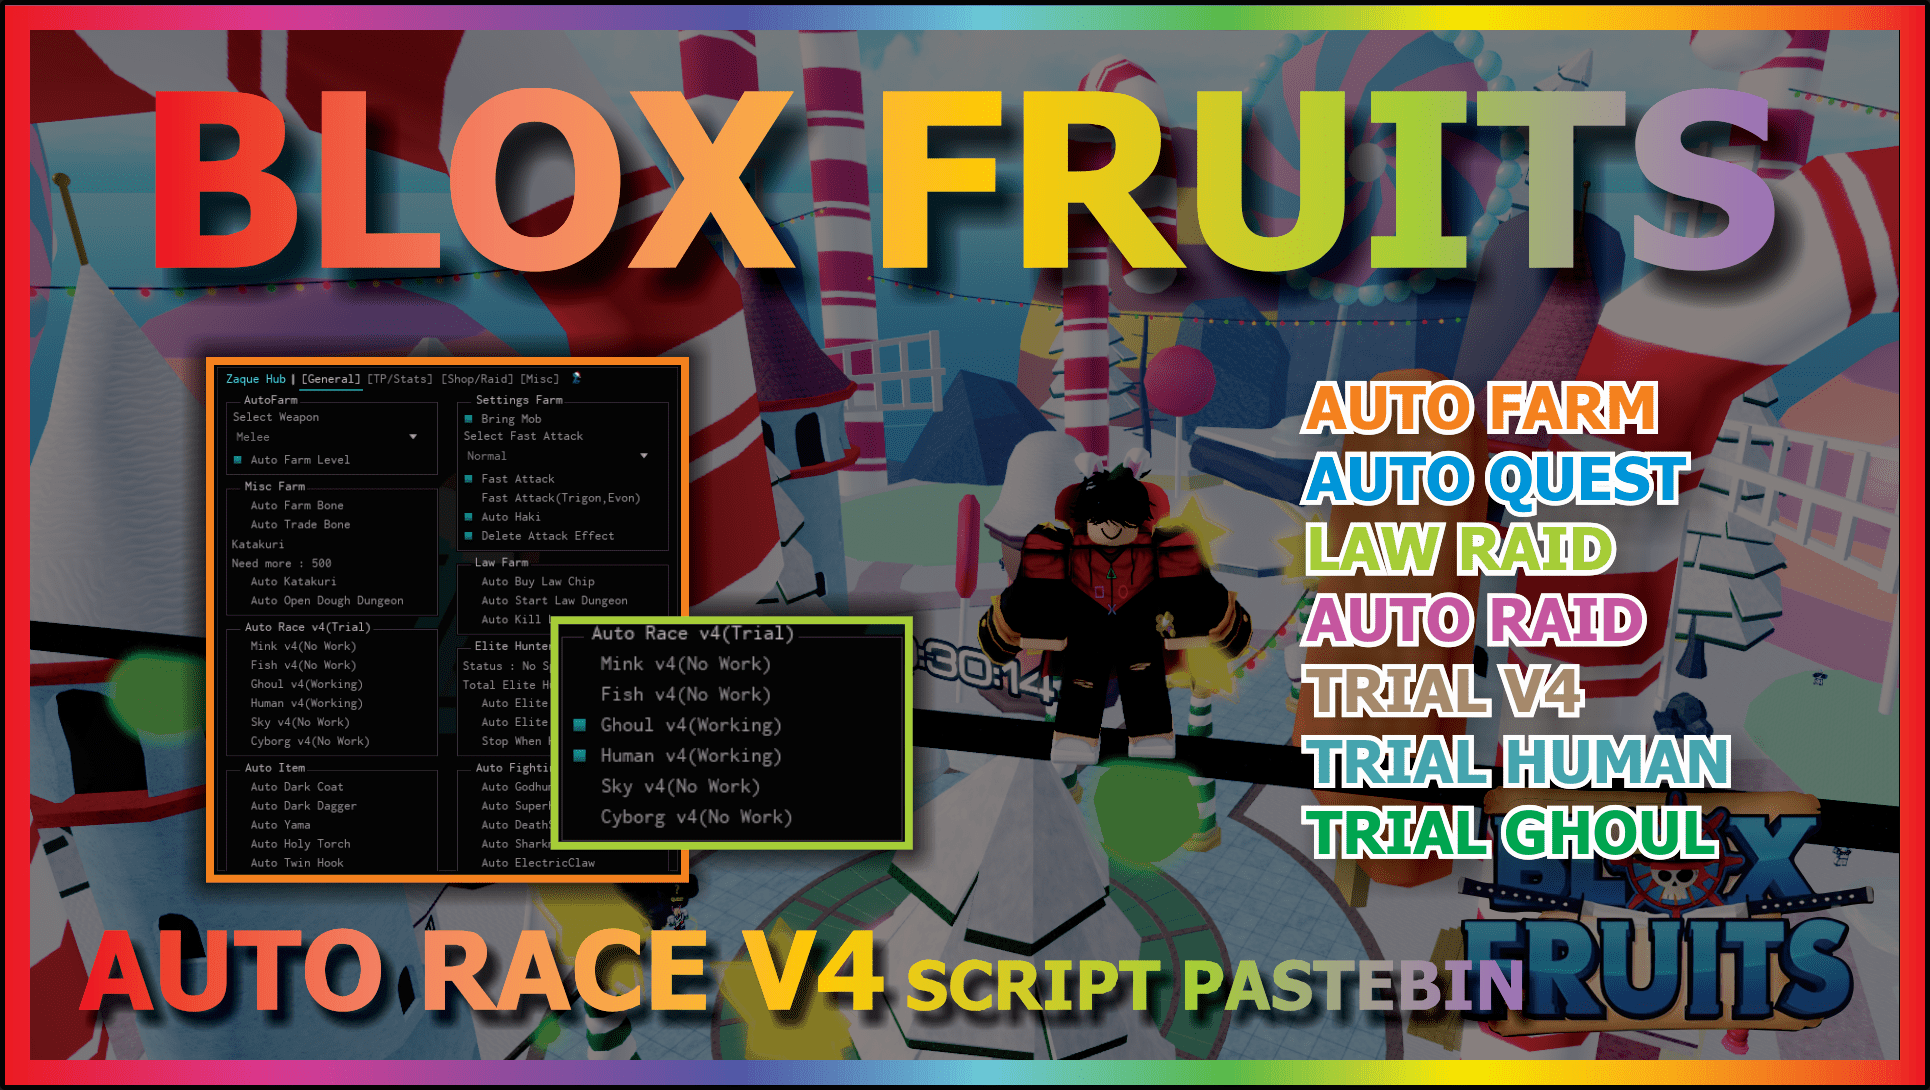 Blox Fruit Script Auto Race V4!!! Latest Version No Banned (Mobile